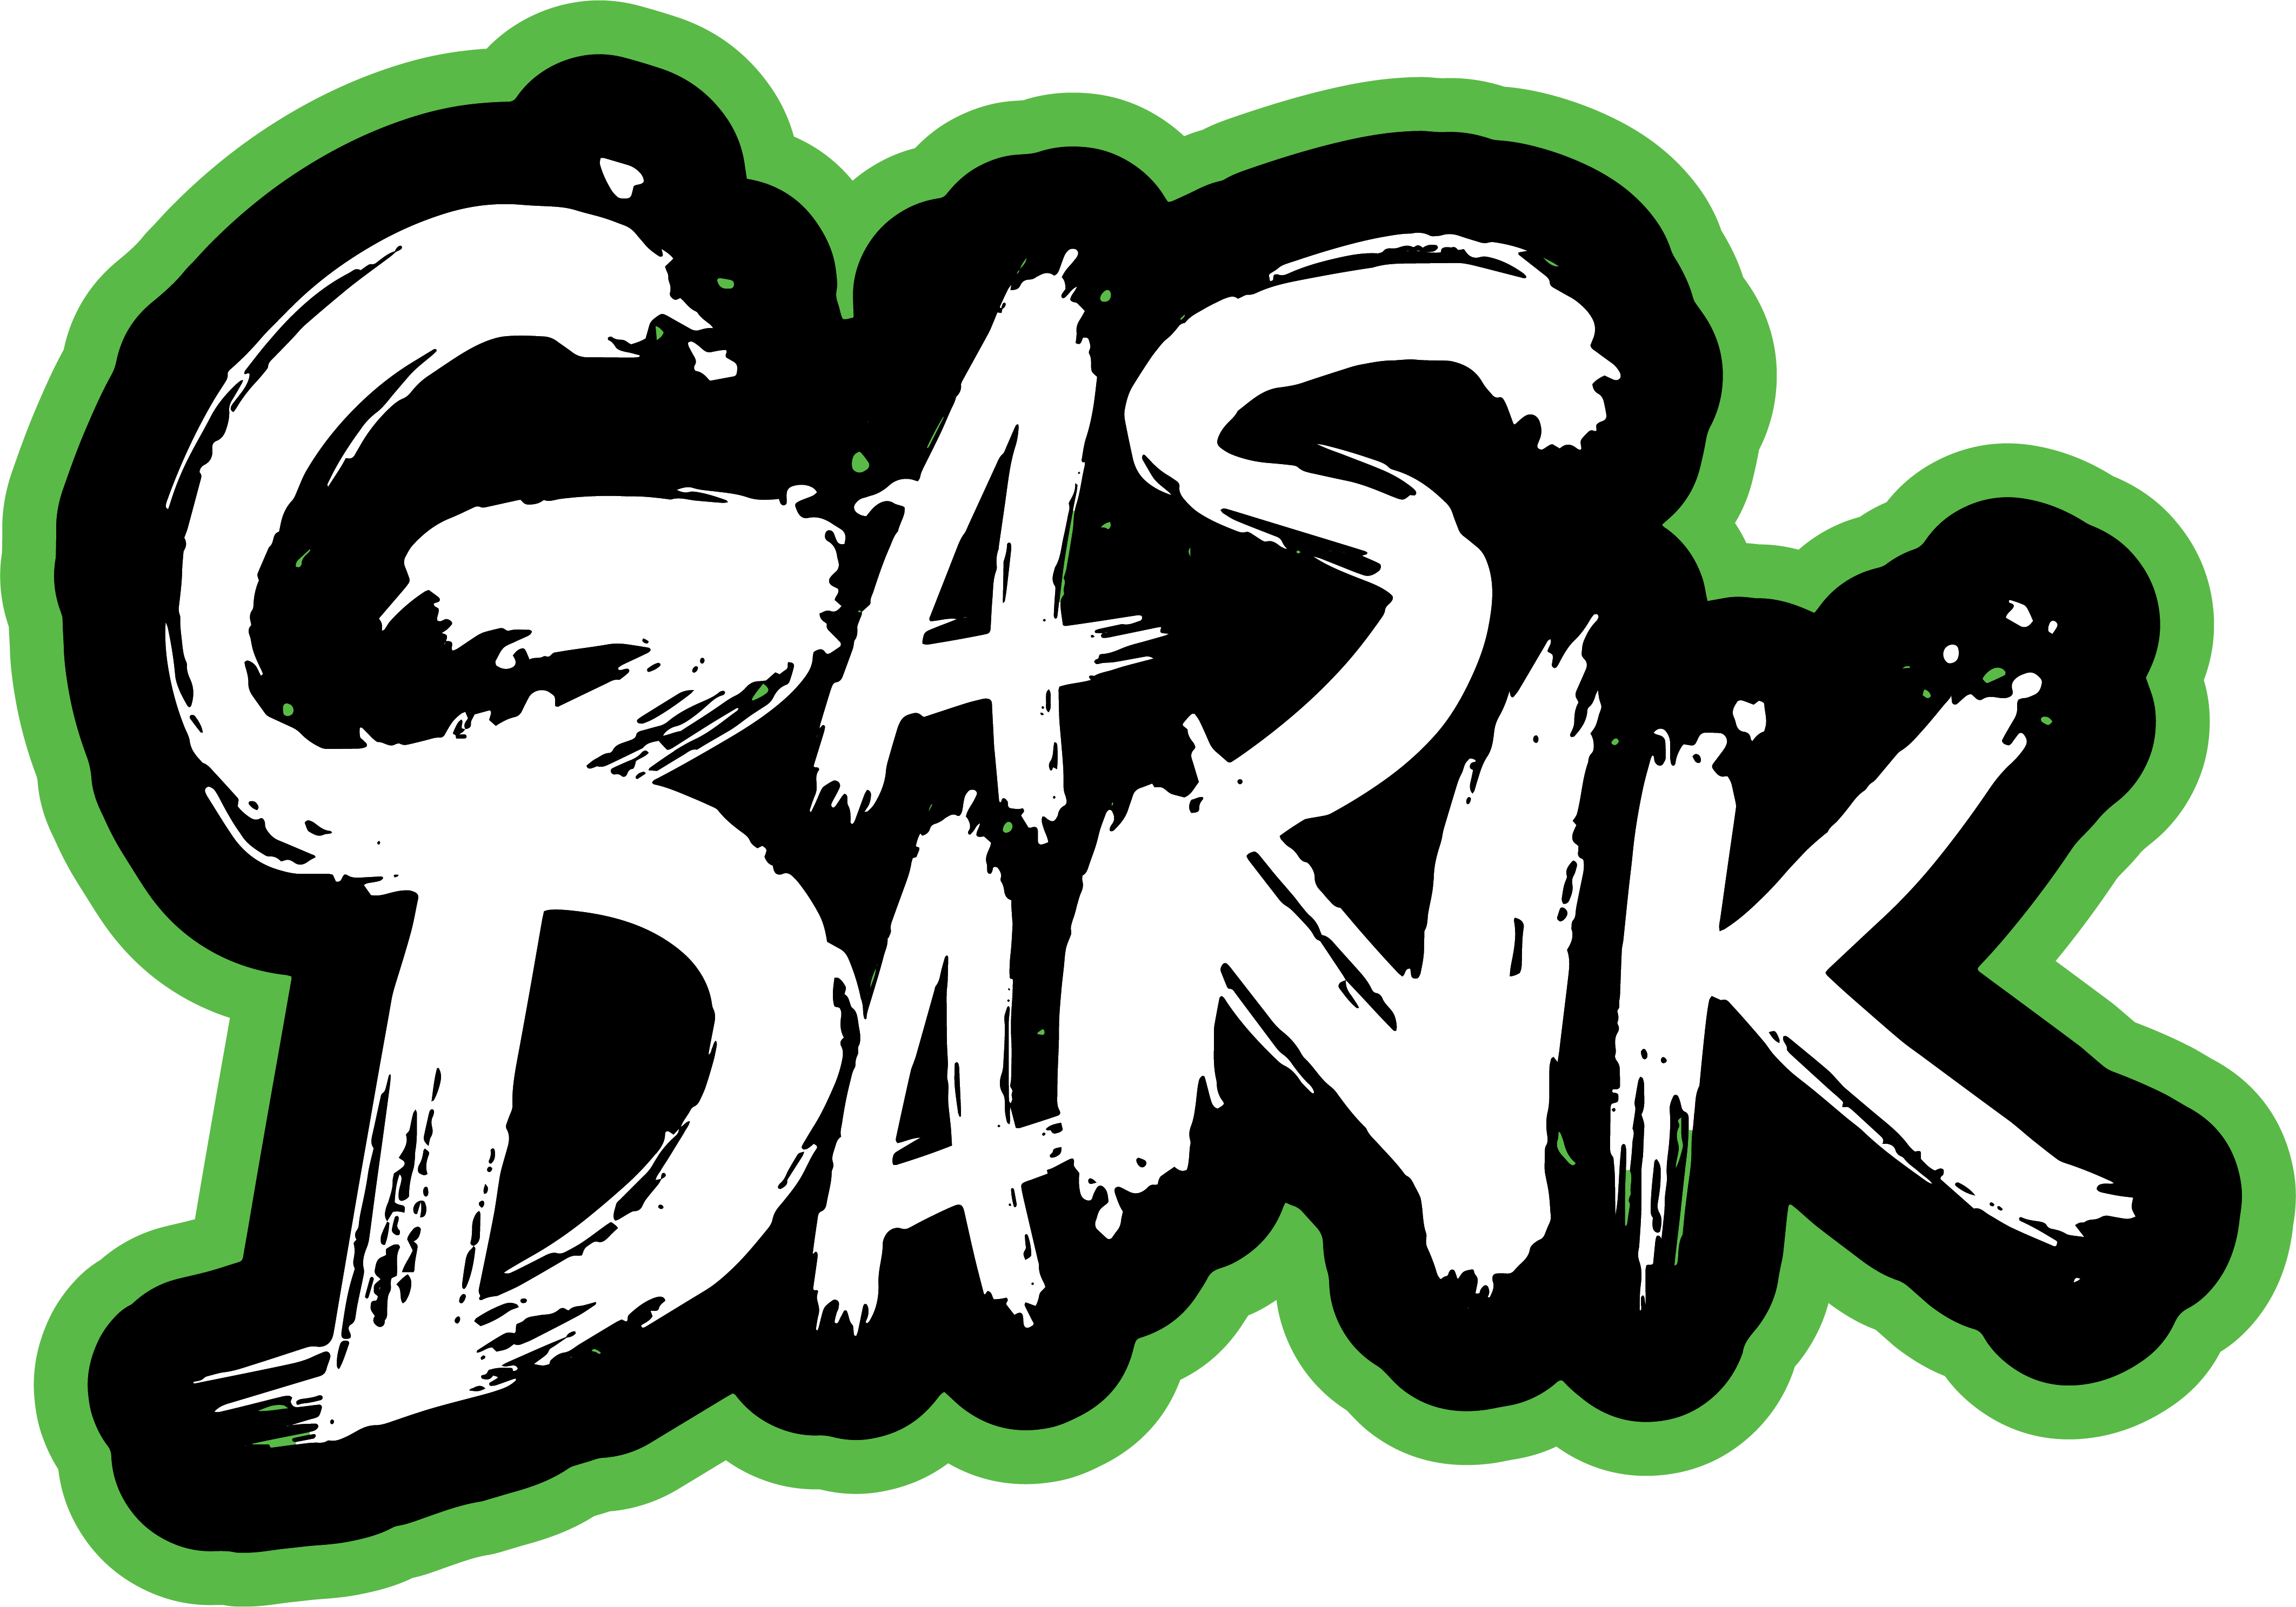 Acheter de l'herbe en ligne GasDank | Meilleur dispensaire en ligne au Canada